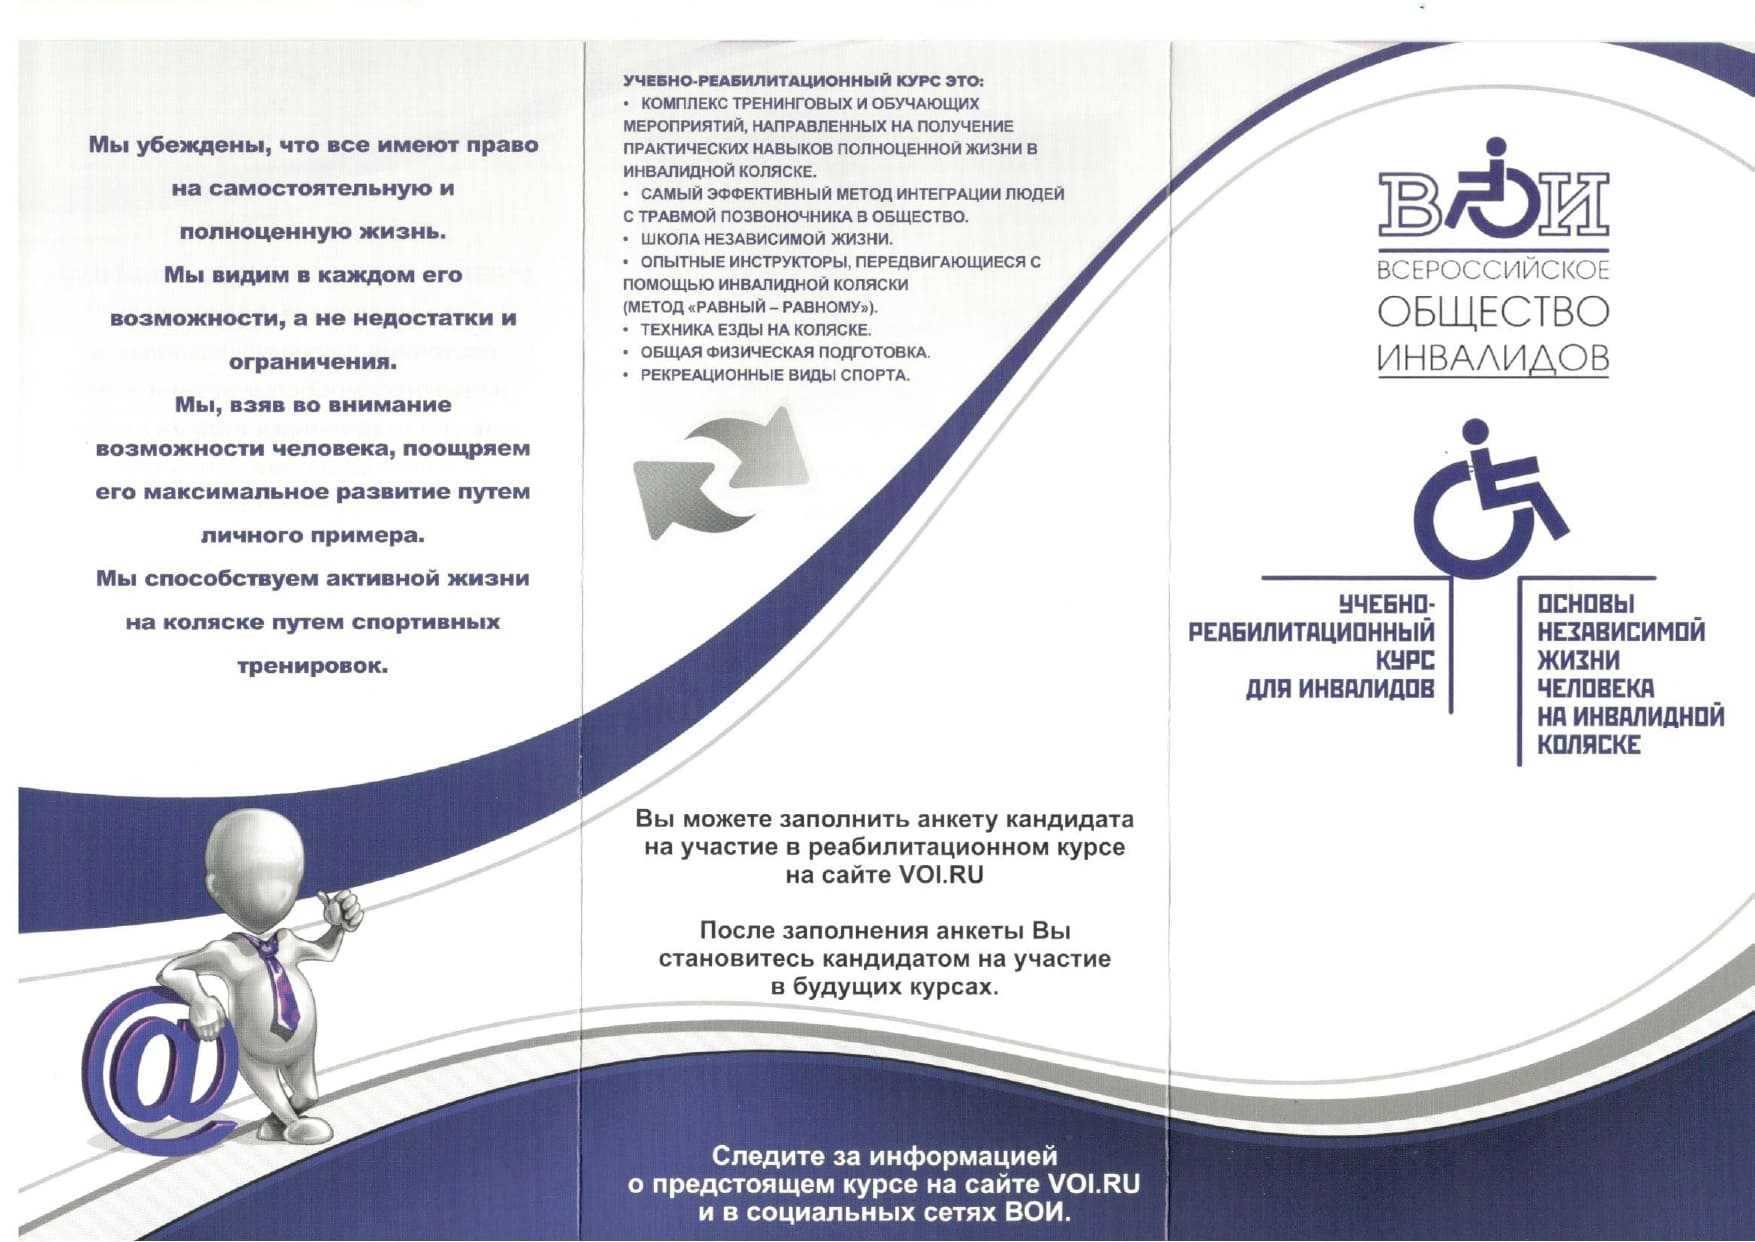 «Основы независимой жизни человека на инвалидной коляске»